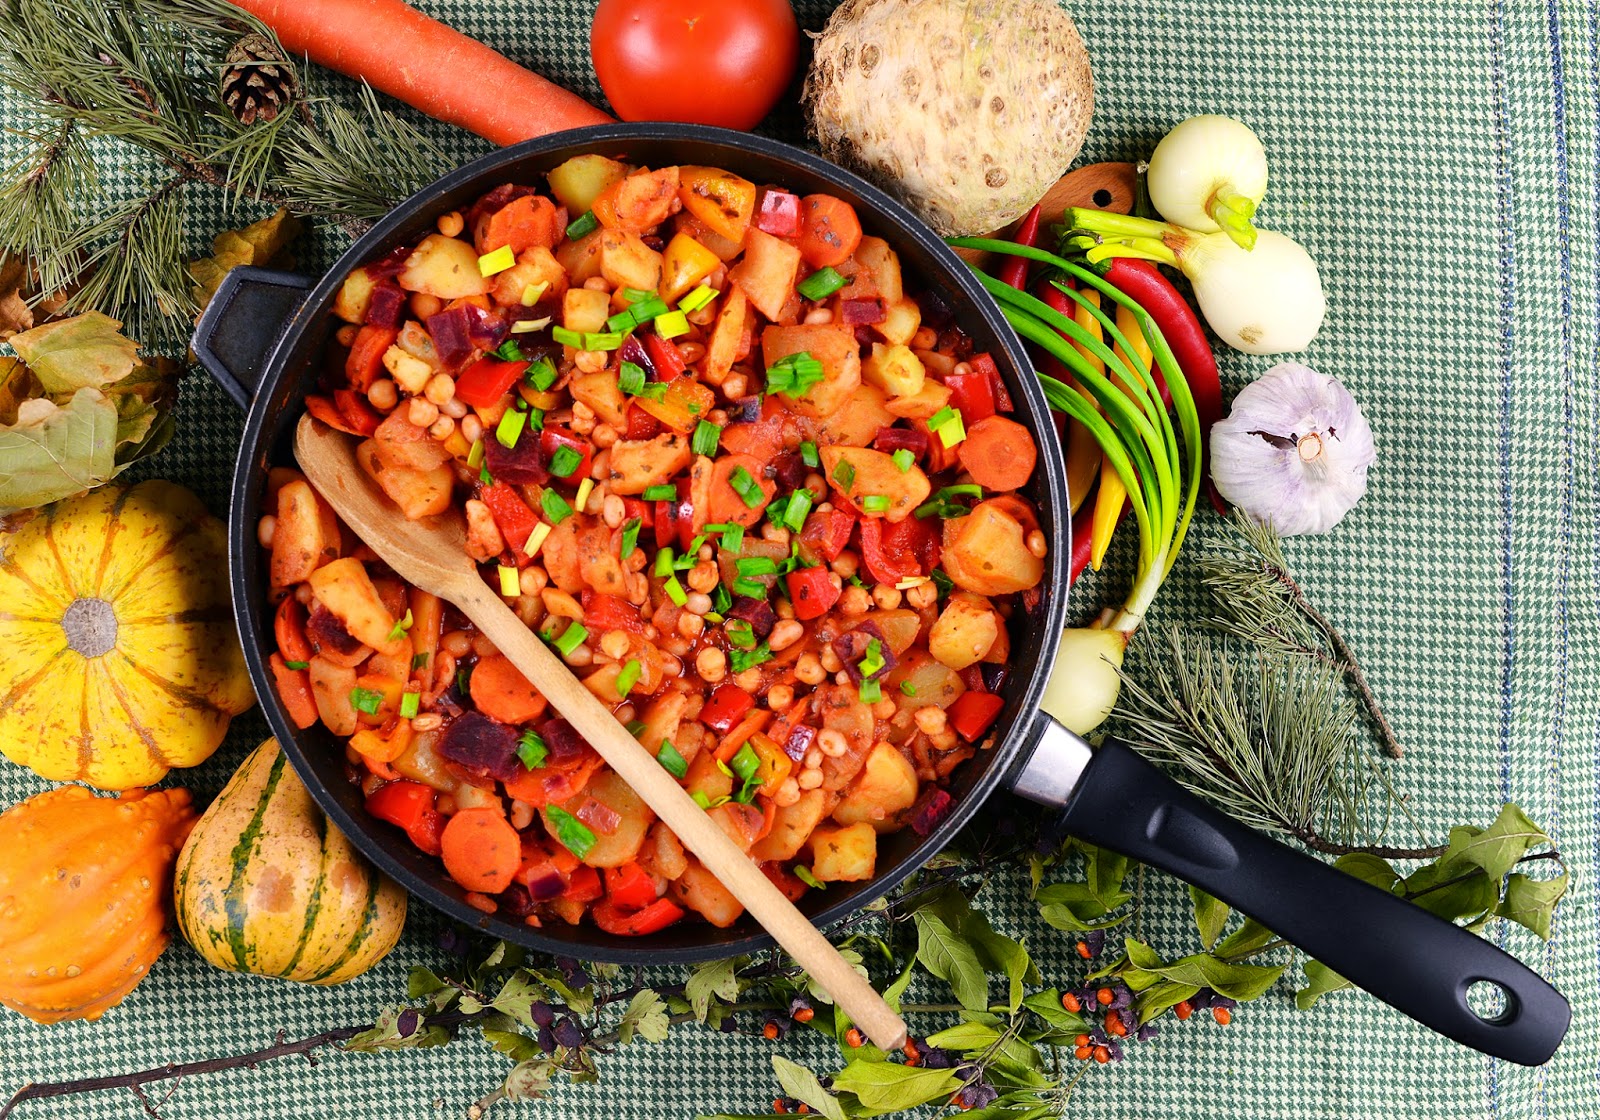 Vegetanie wegetariańskie przepisy, tanie i szybkie dania domowe